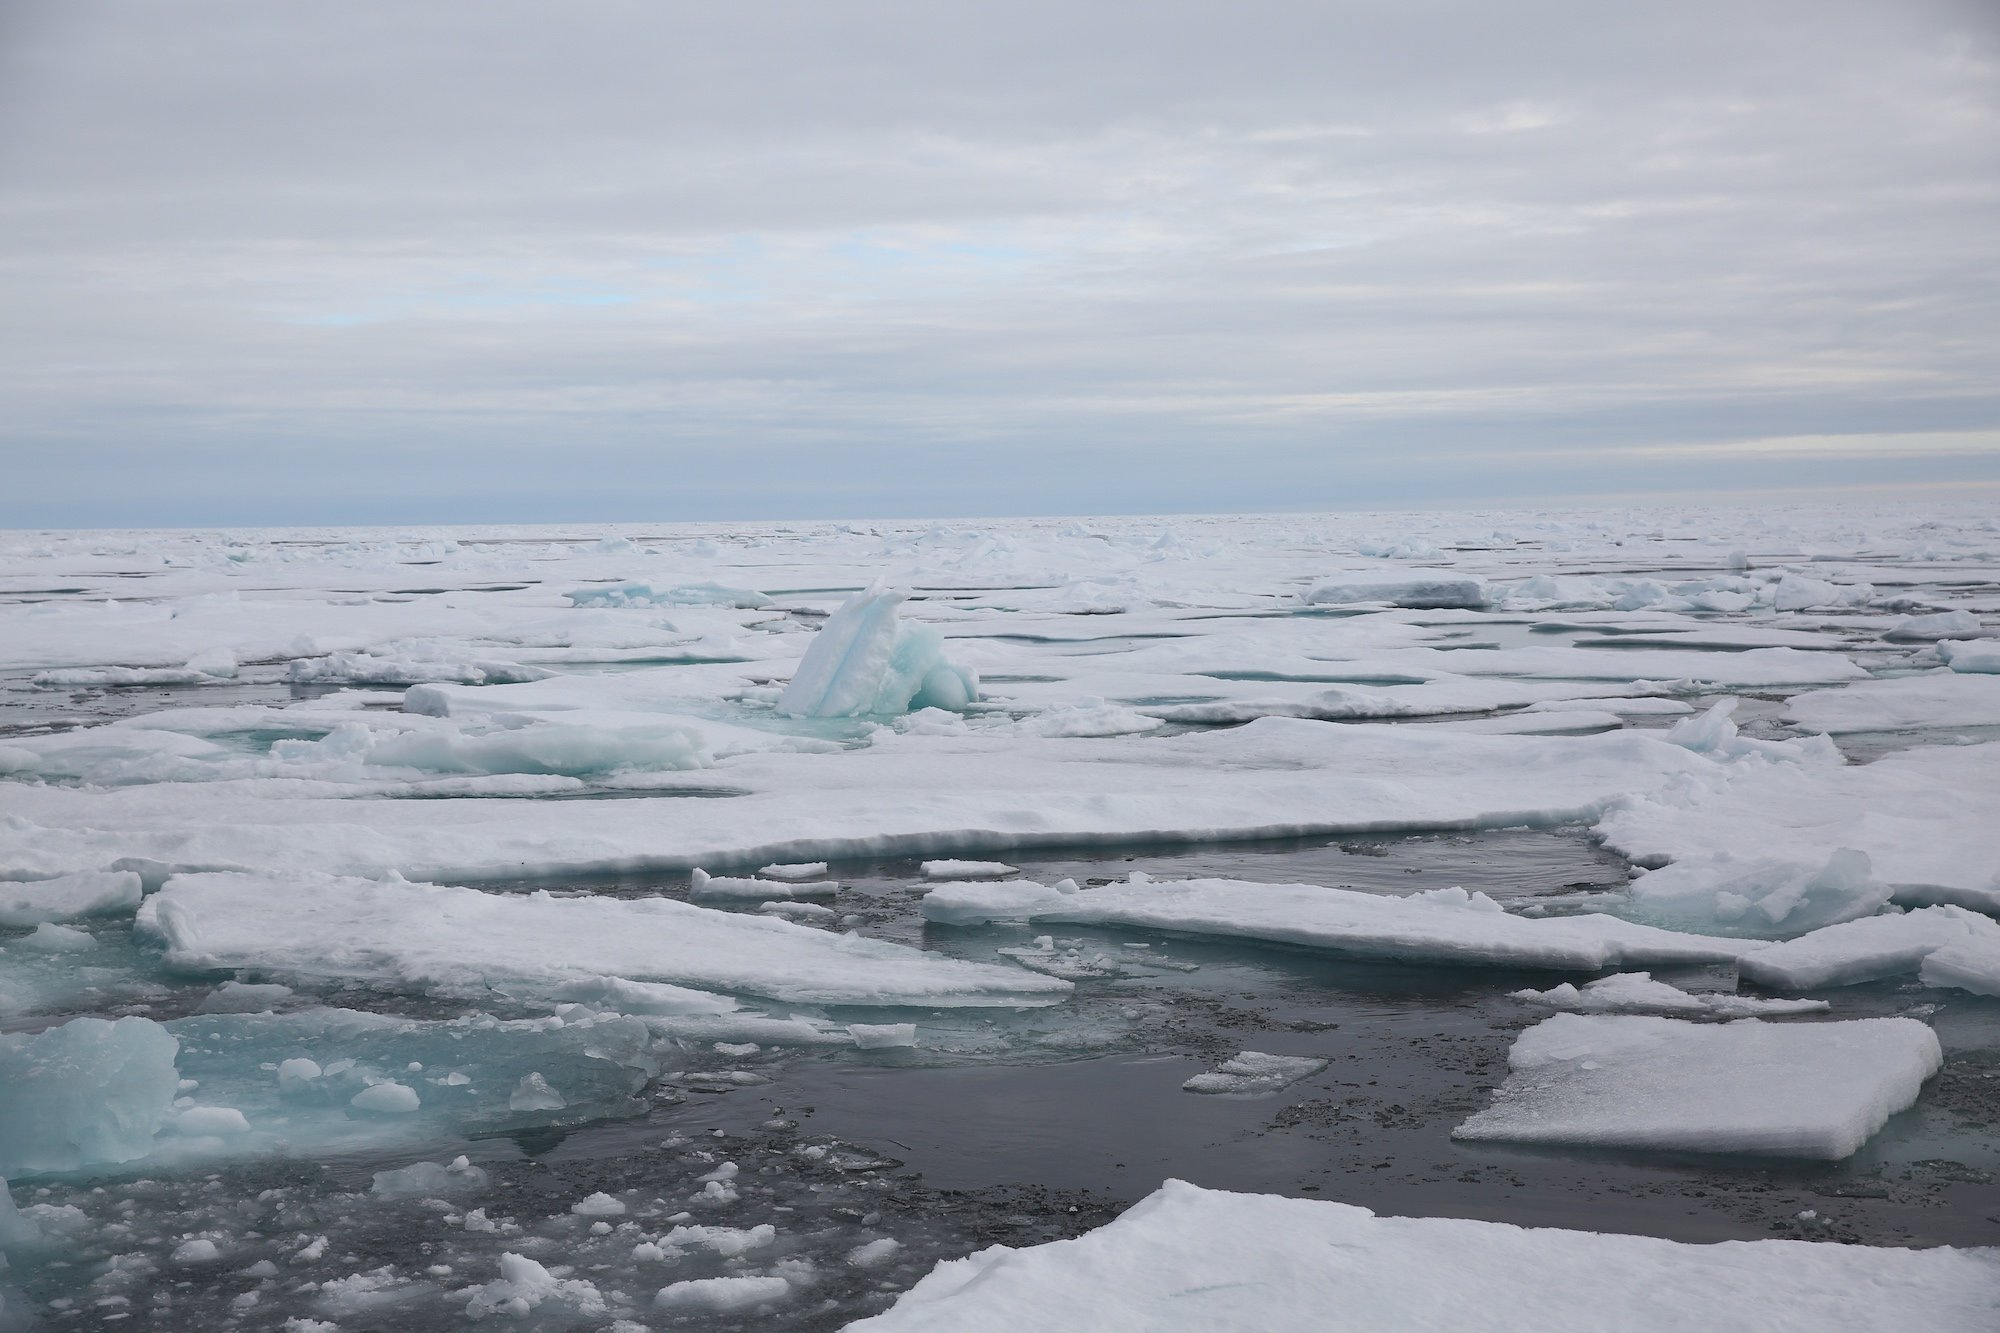 Незамерзающее арктическое море. Арктика Онега. Кромка льда в Баренцевом море. Обледенение в Баренцевом море. Отчет от южных морей до полярного края